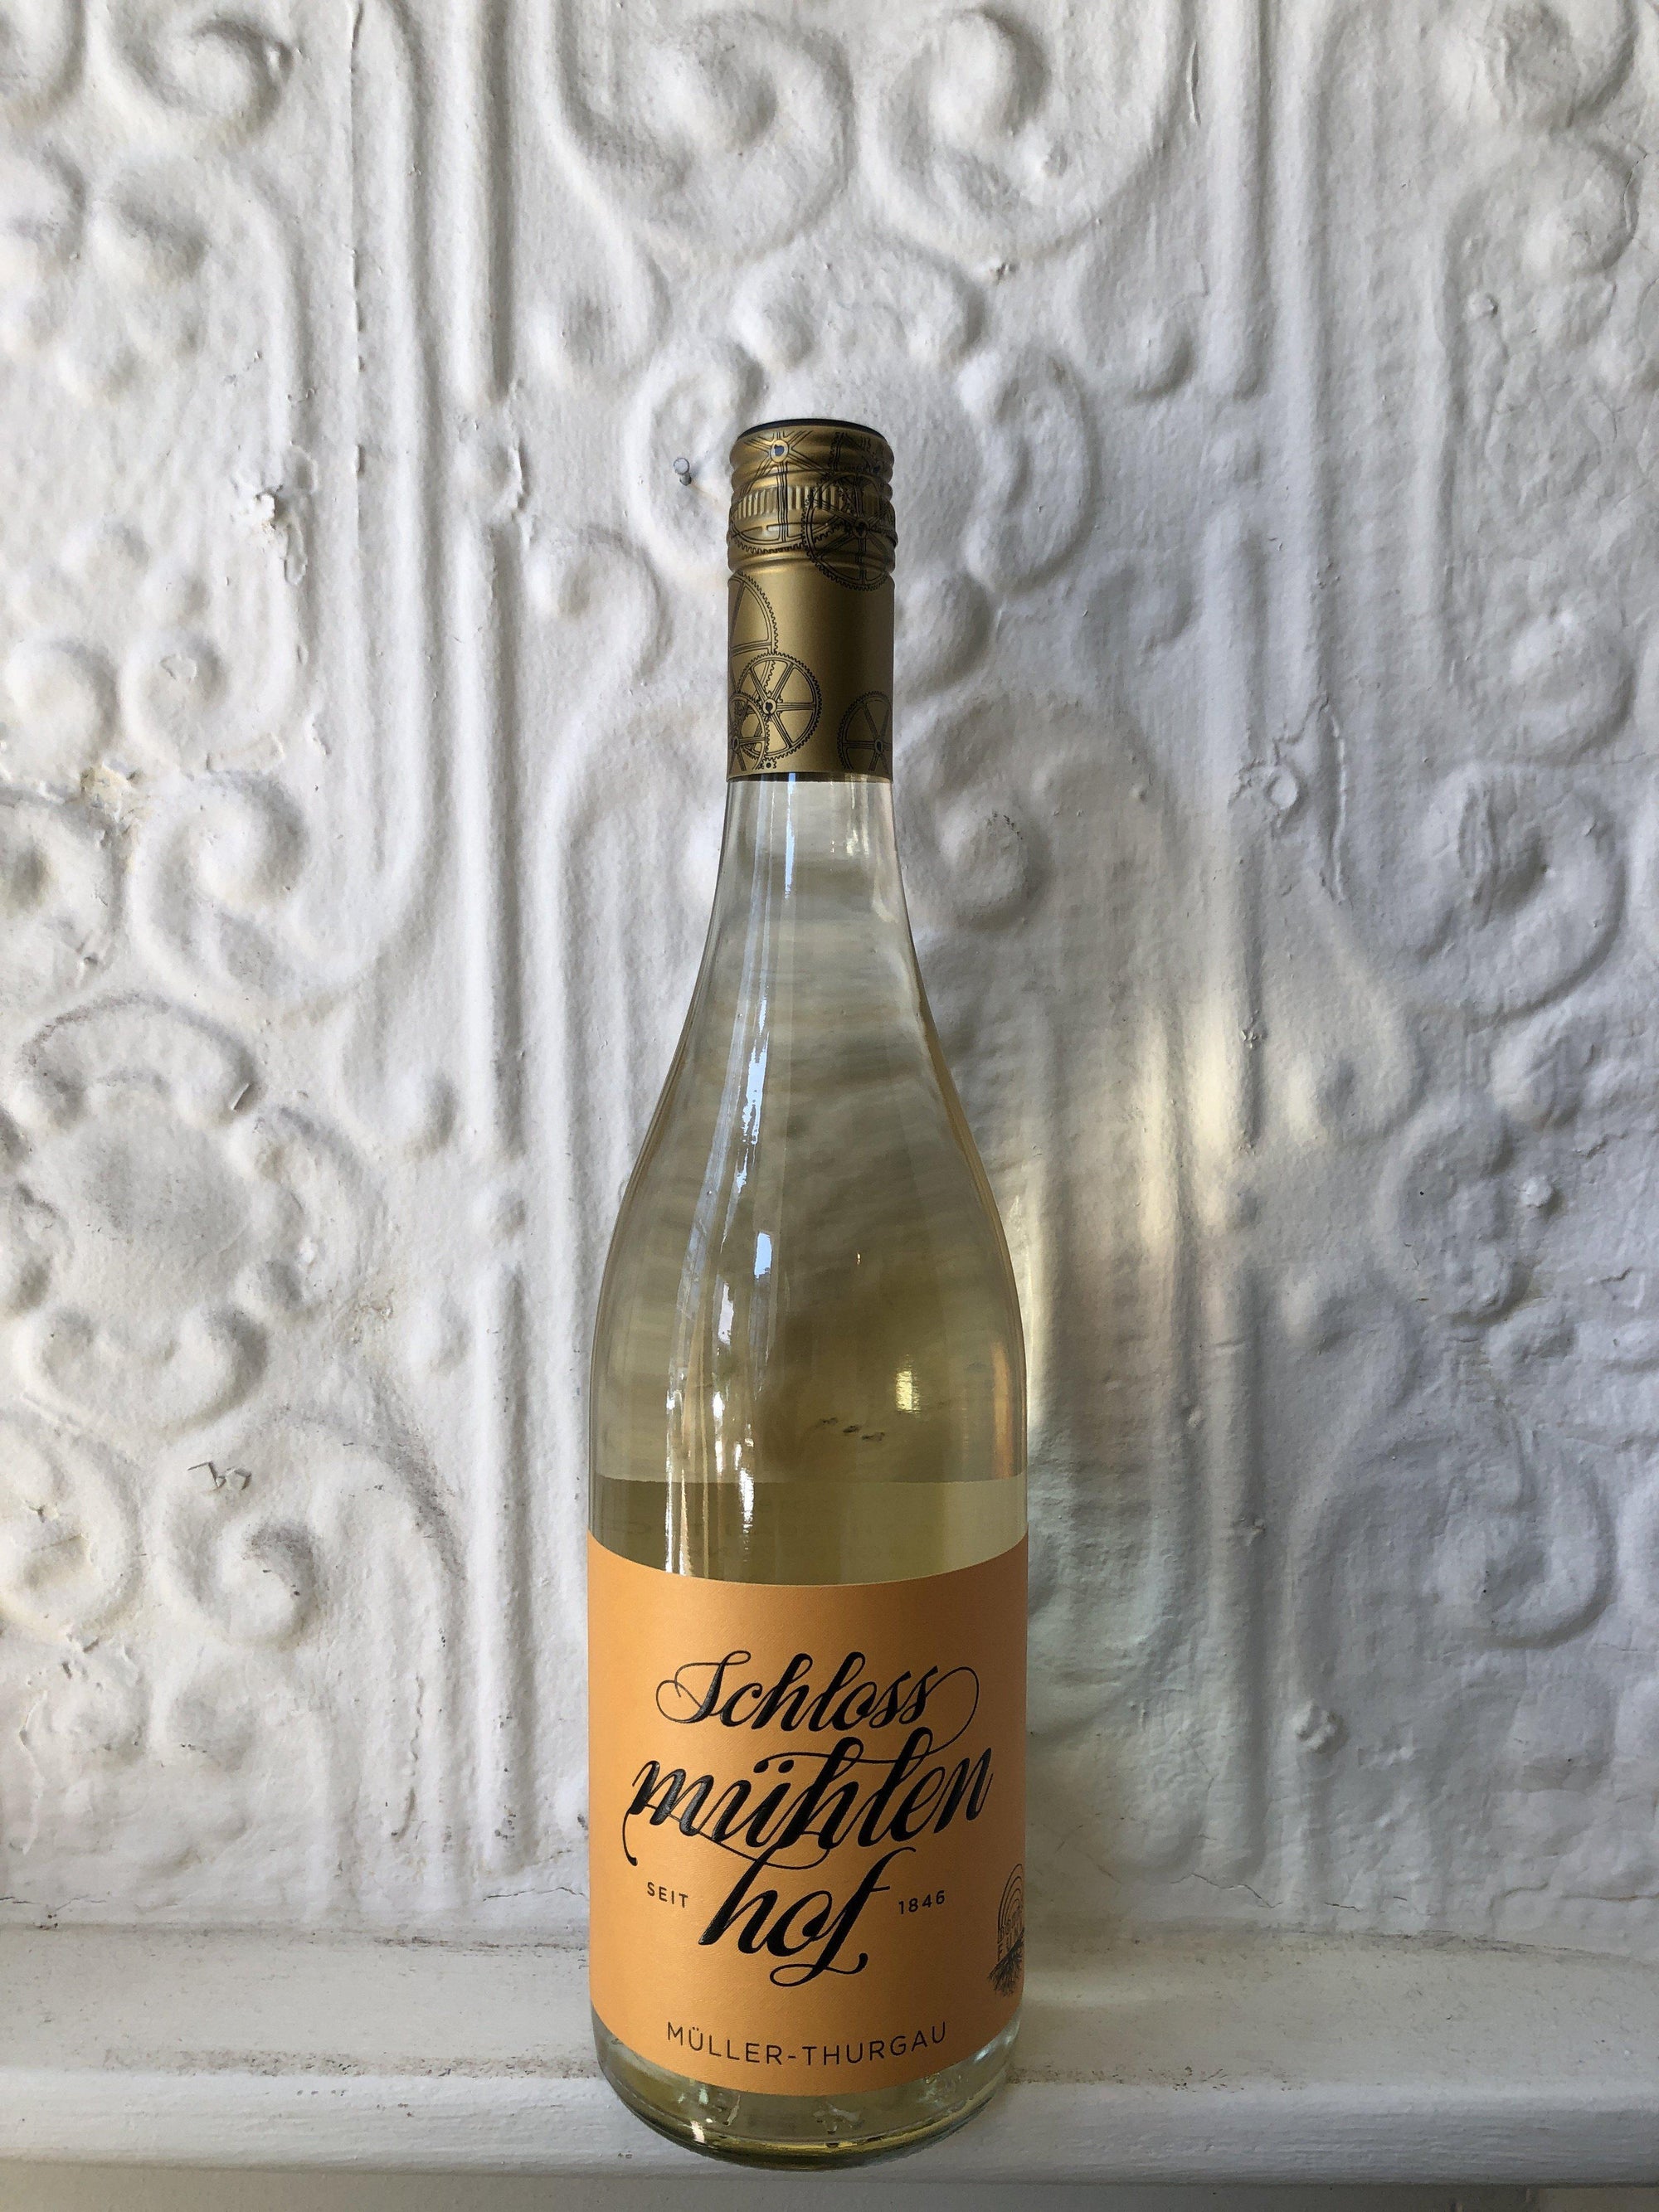 Muller-Thurgau "Boden Funk", Weingut Schlossmuhlenhof 2019 (Germany)-Wine-Bibber & Bell